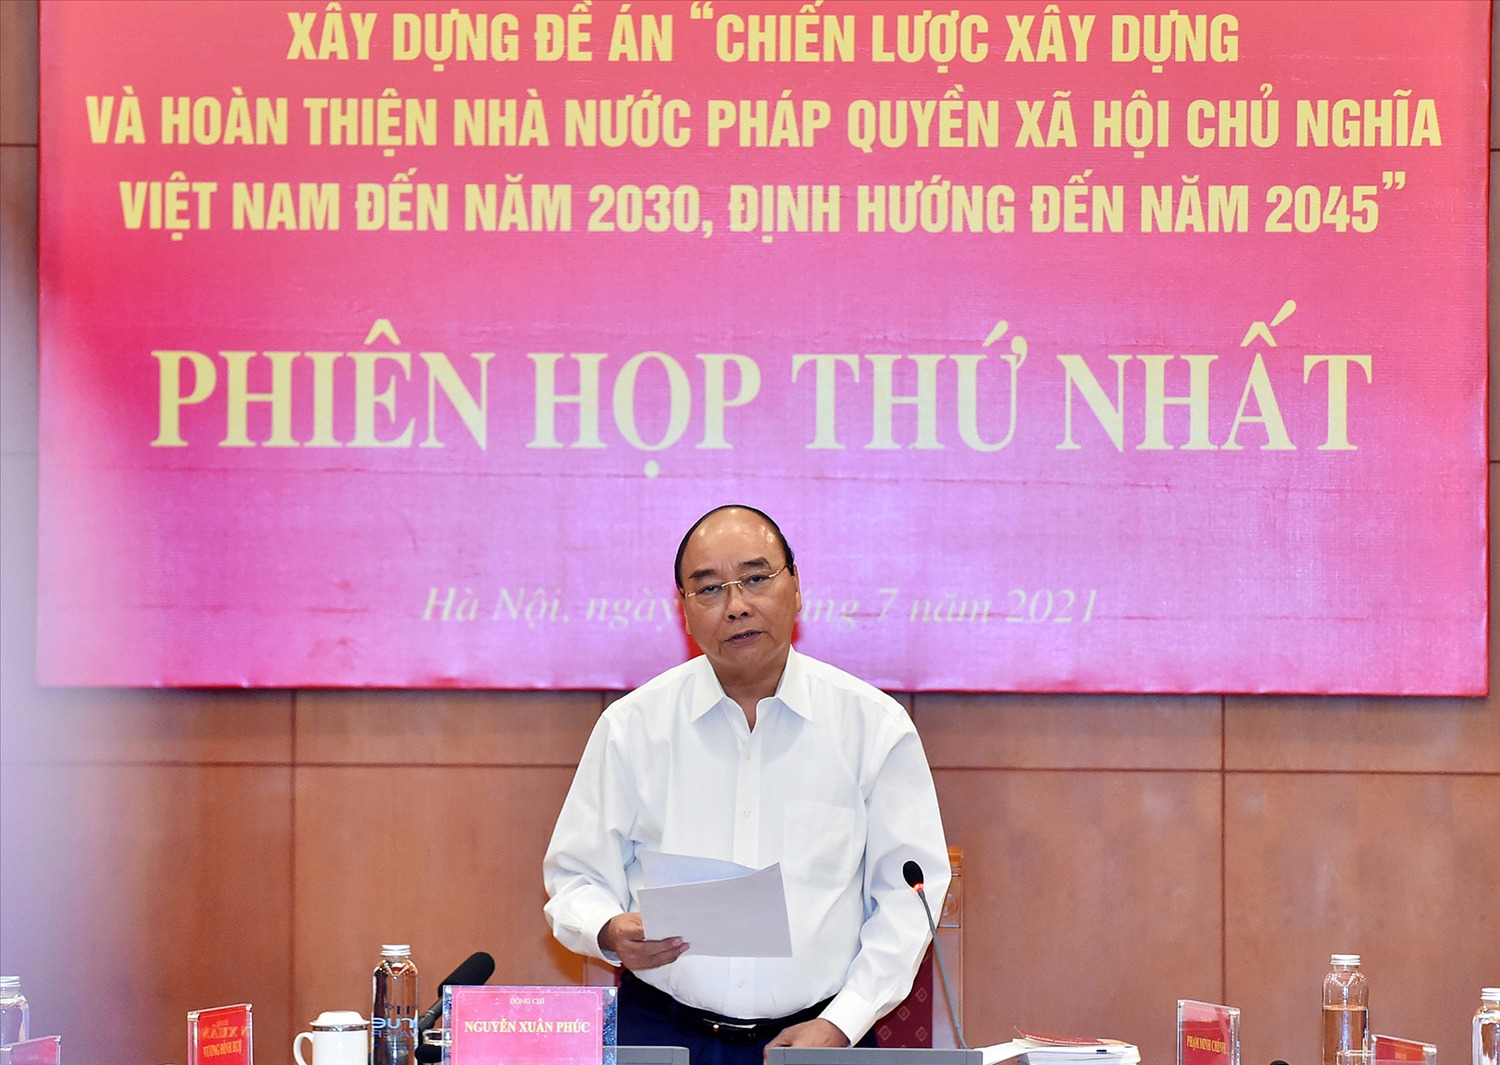 Chủ tịch nước Nguyễn Xuân Phúc phát biểu khai mạc phiên họp đầu tiên của Ban Chỉ đạo xây dựng Đề án “Chiến lược xây dựng và hoàn thiện Nhà nước pháp quyền XHCN Việt Nam đến năm 2030, định hướng đến năm 2045”. Ảnh: VGP/Nhật Bắc